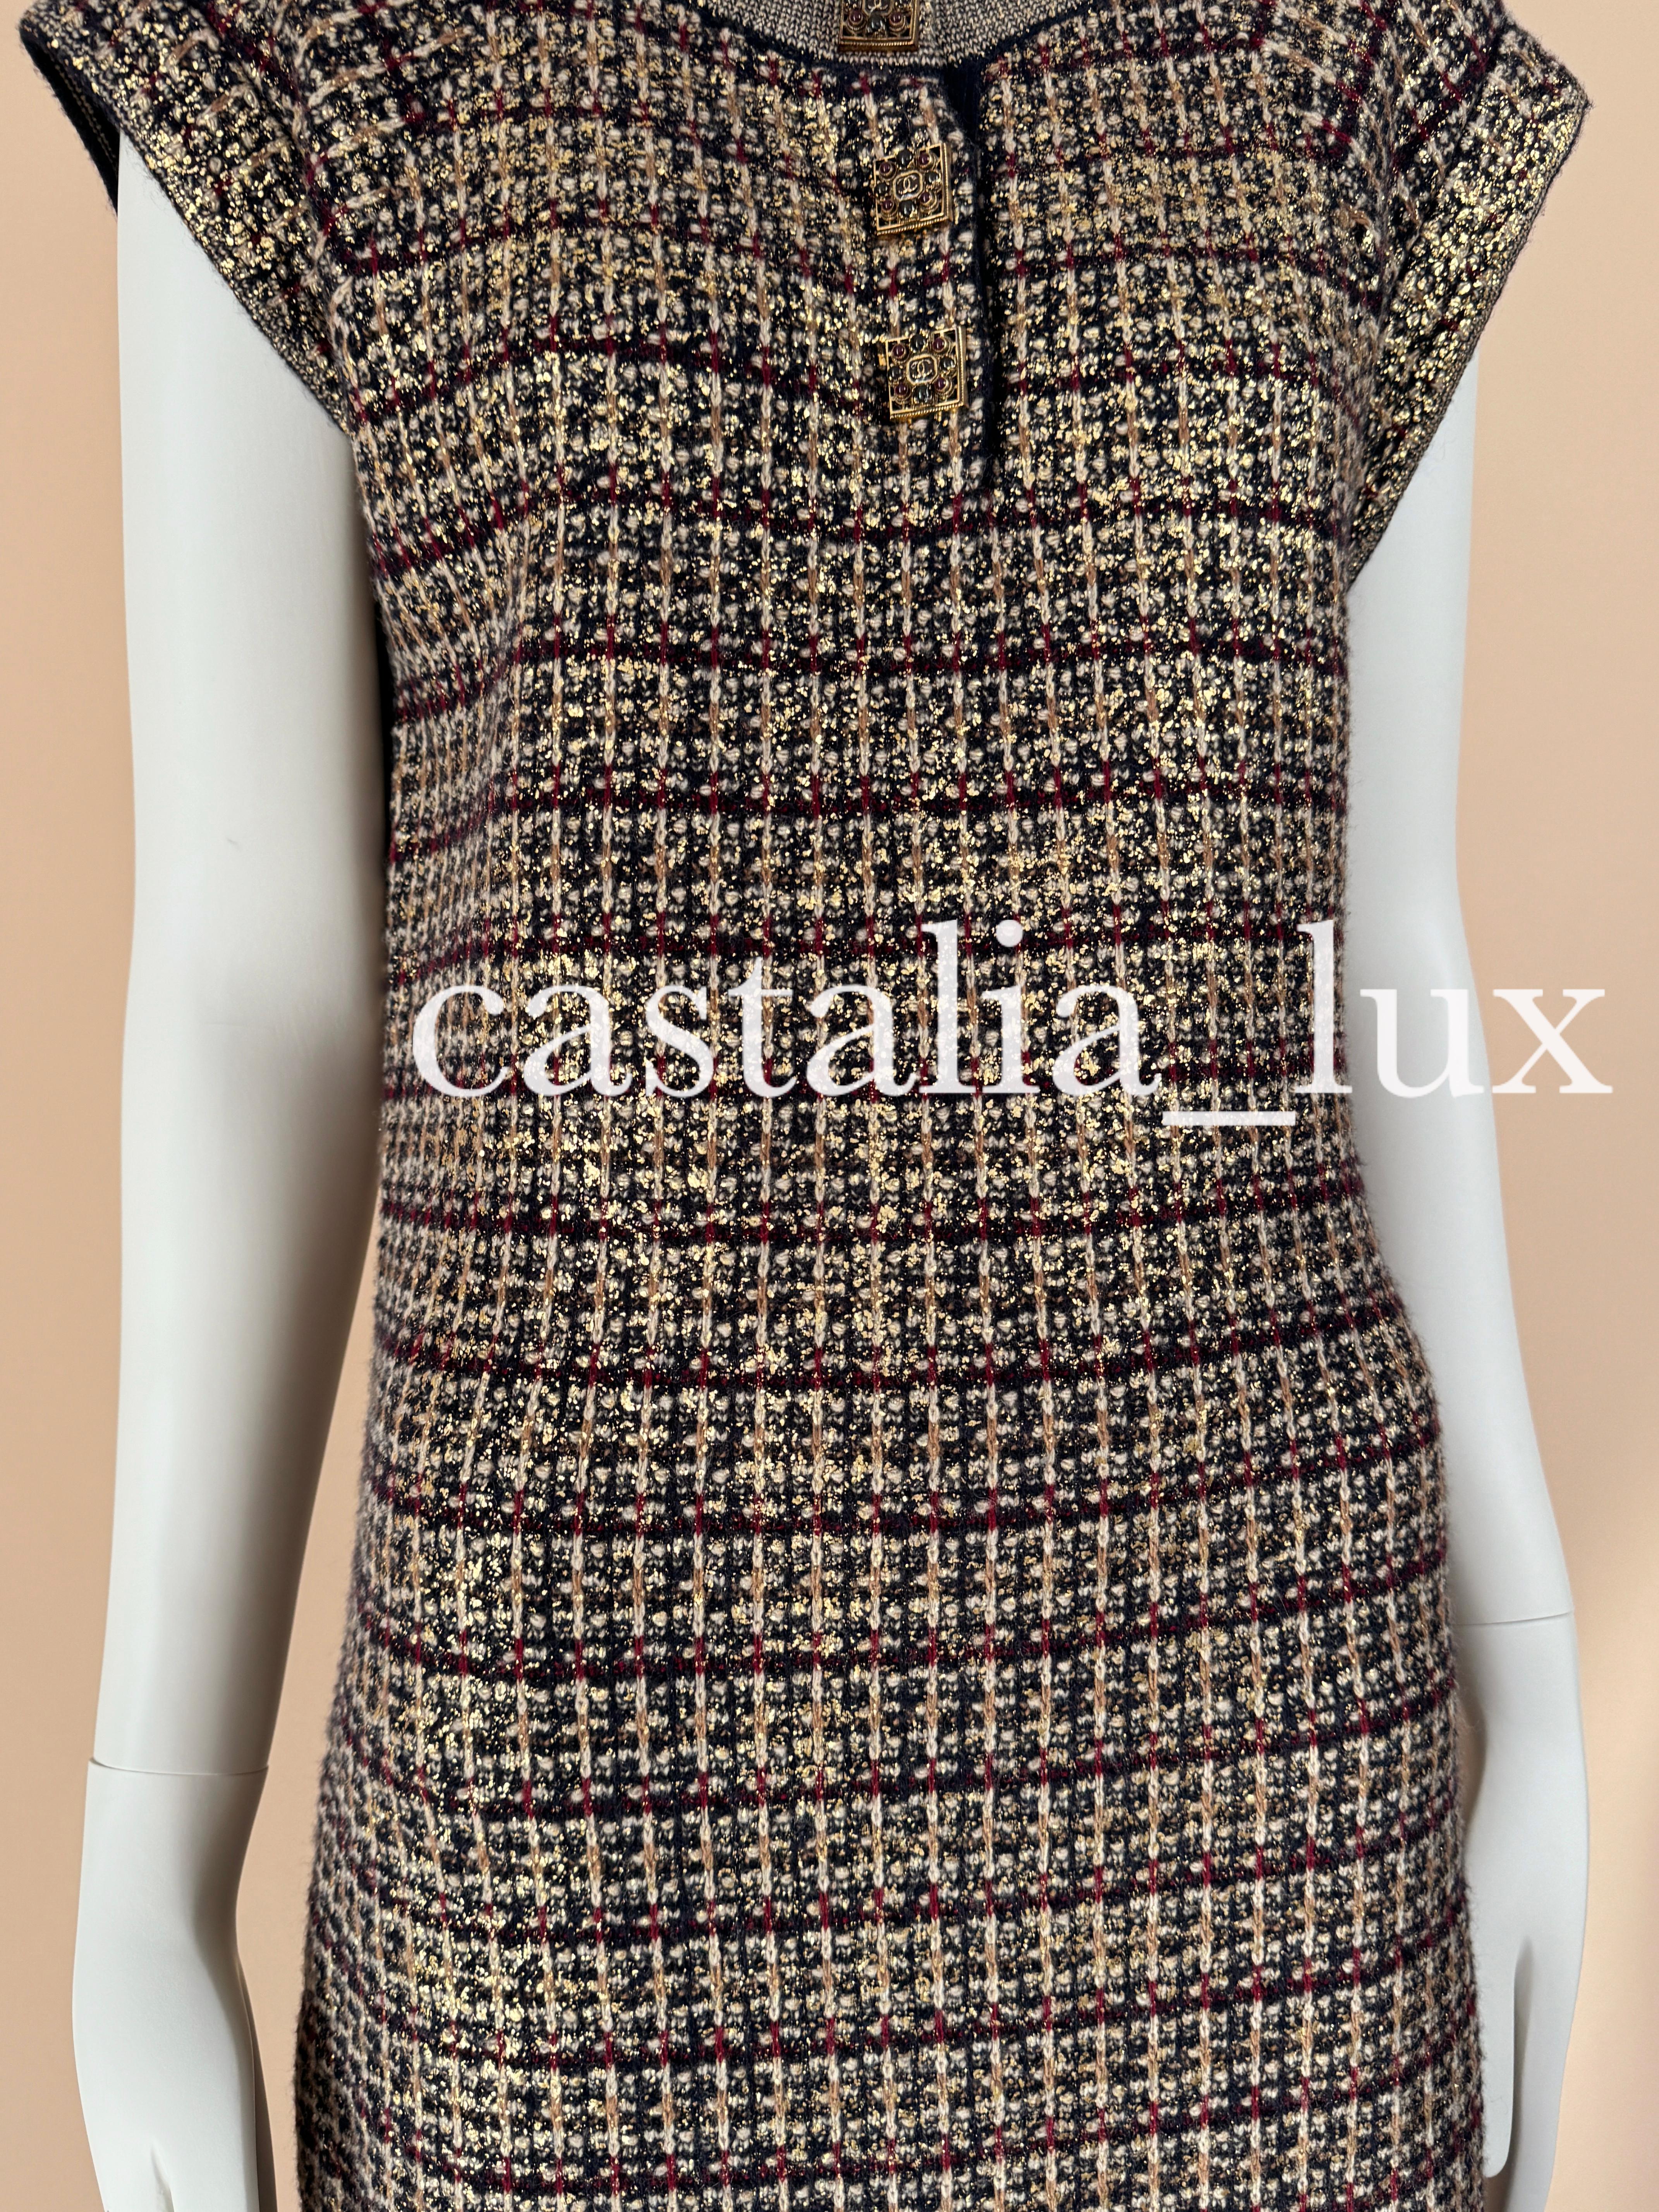 New Jewel Gripoix Buttons Paris / Byzance Dress For Sale 8